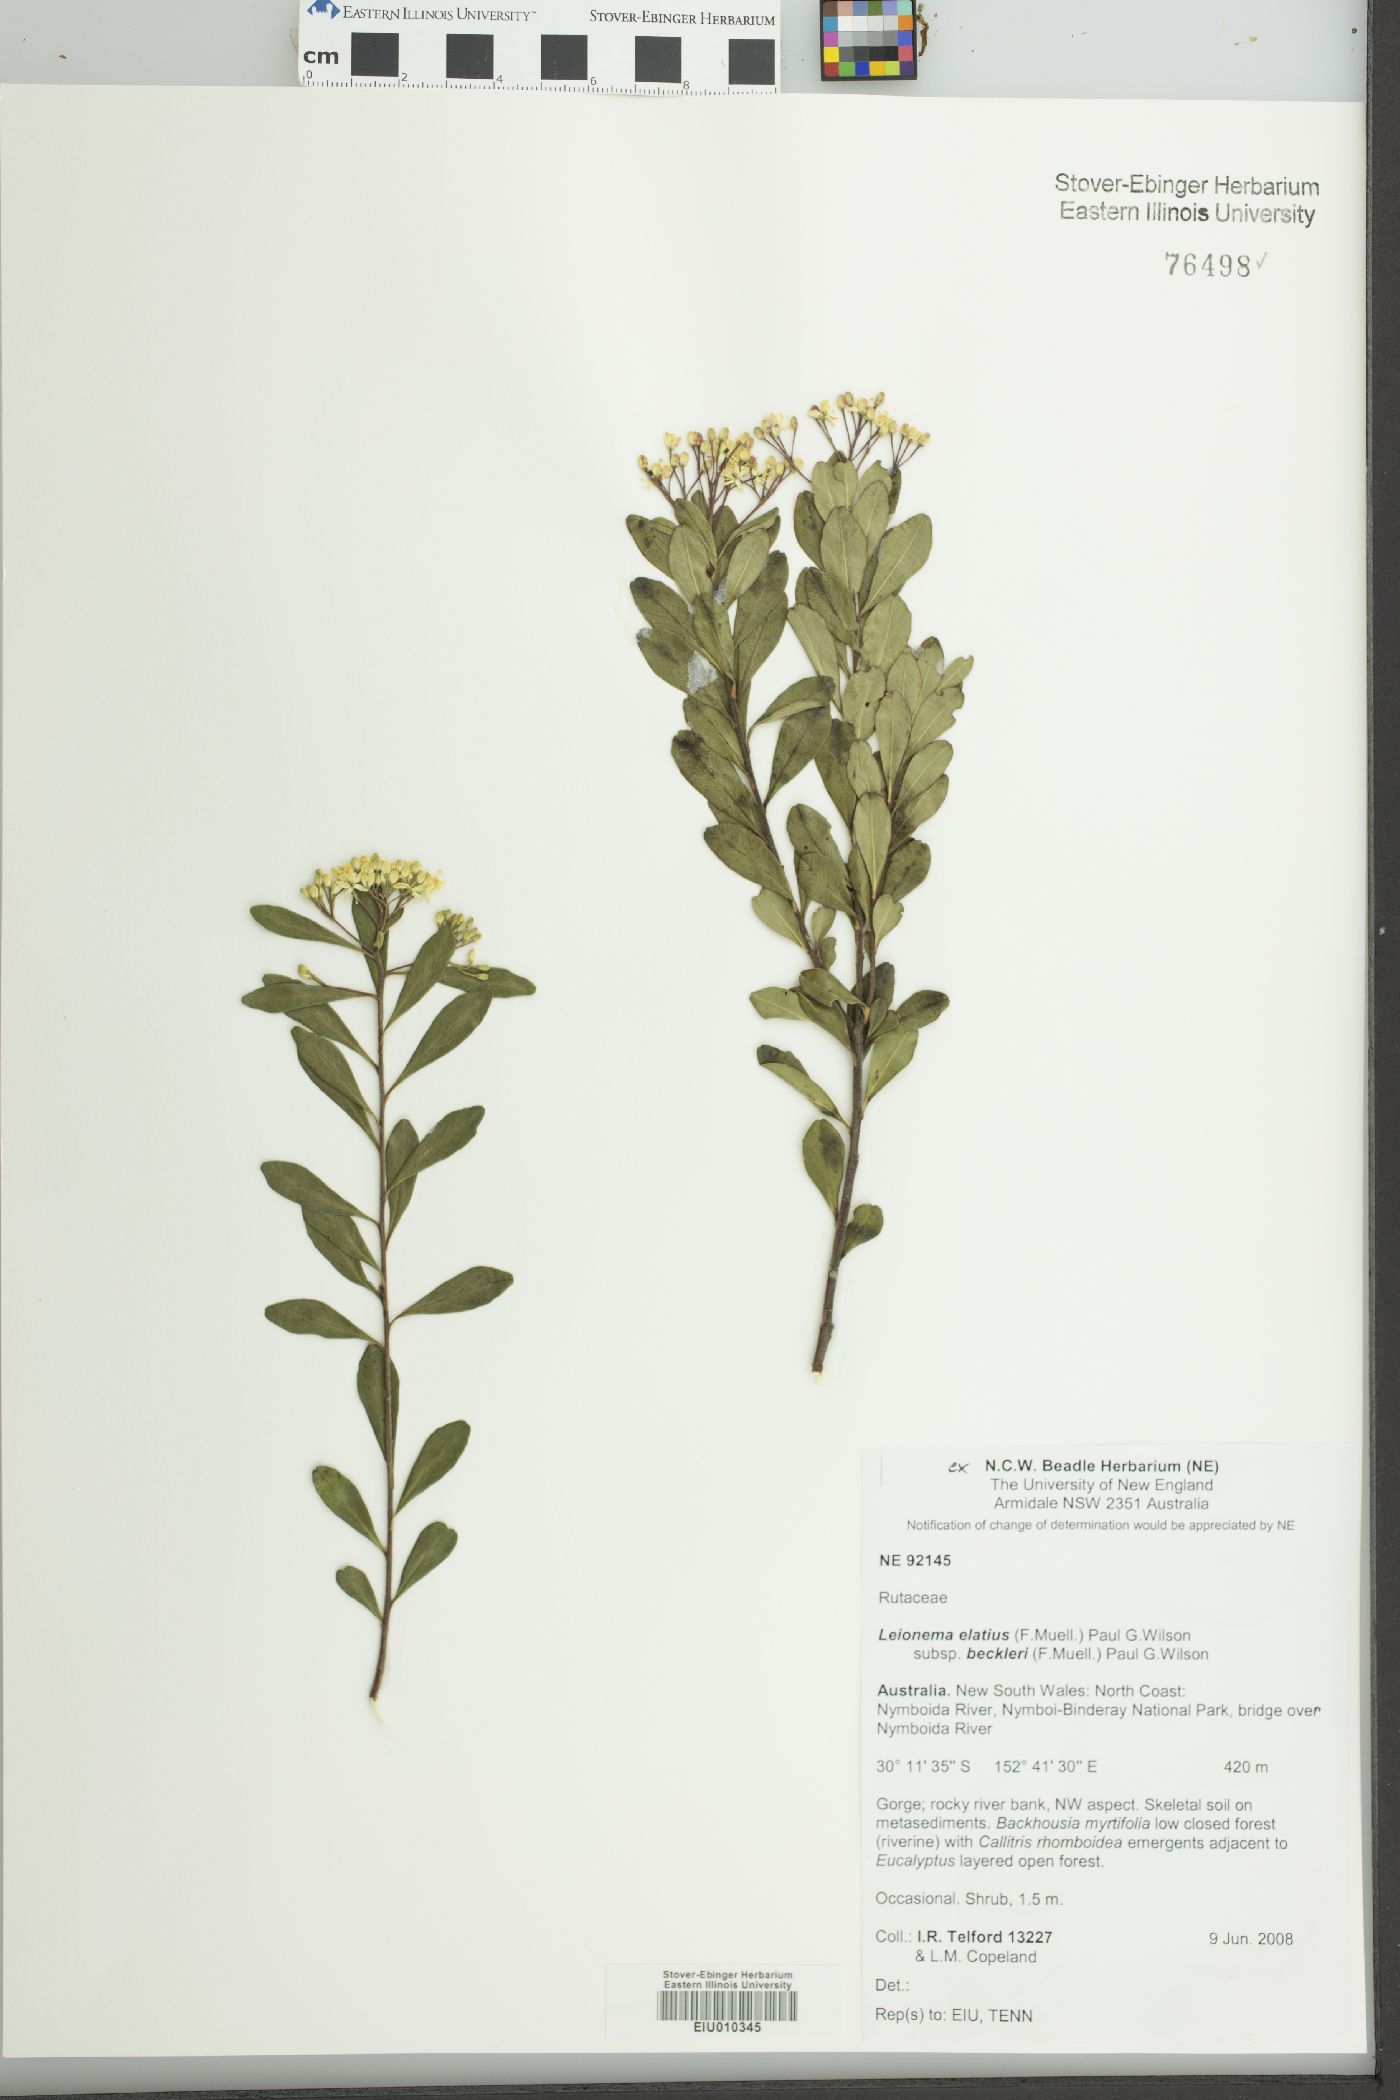 Leionema elatius subsp. beckleri image